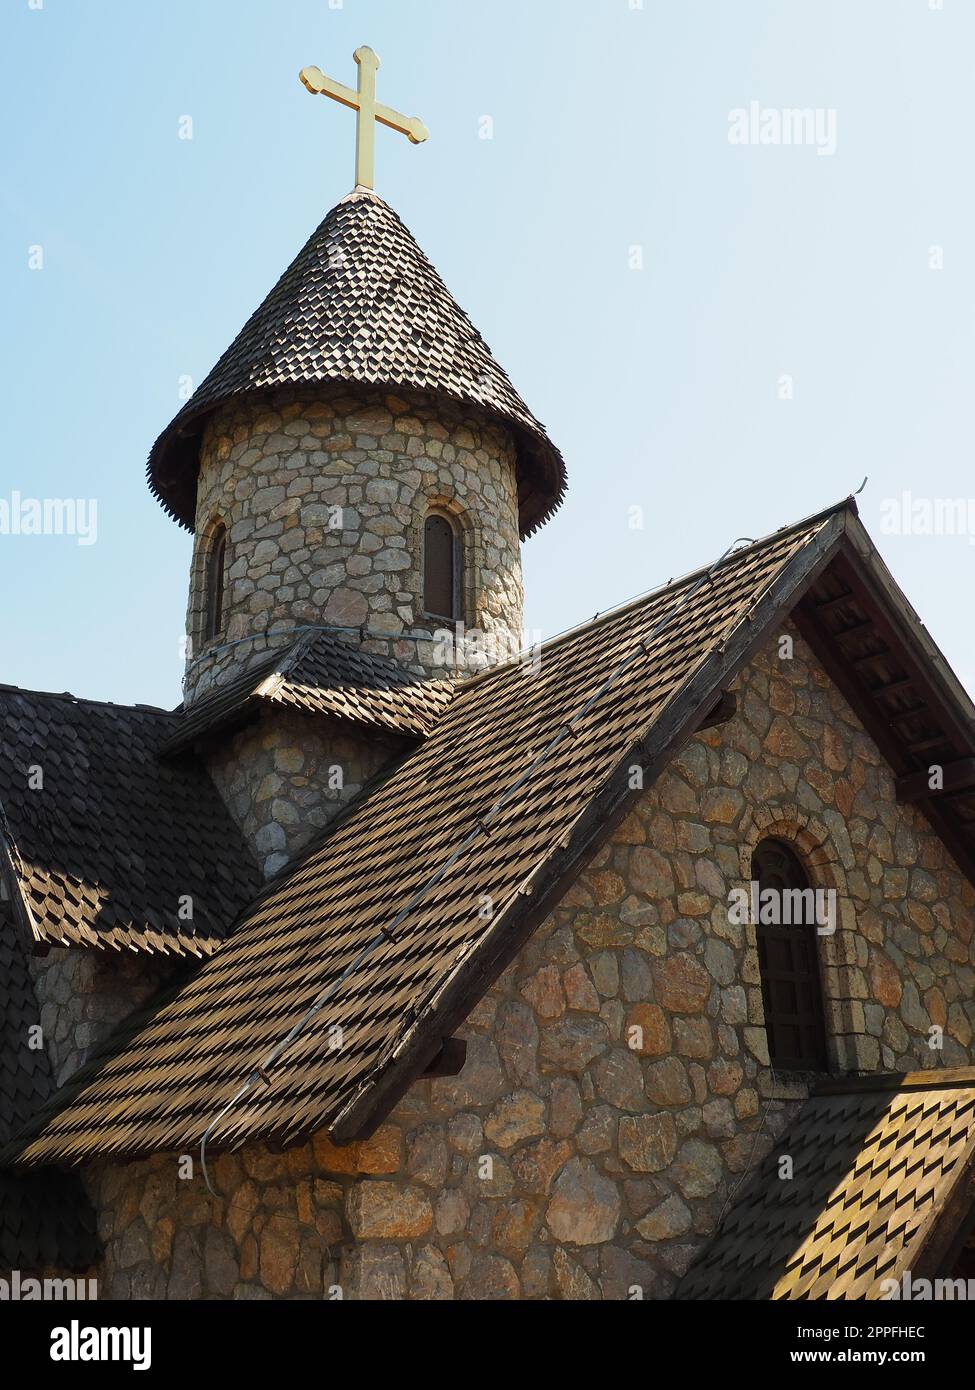 Steinorthodoxe Kirche im Ethno-Park. Religiöser Tourismus. Ein Gebäude aus Steinen mit einem Kreuz auf der Kuppel. Blauer Himmel Stockfoto